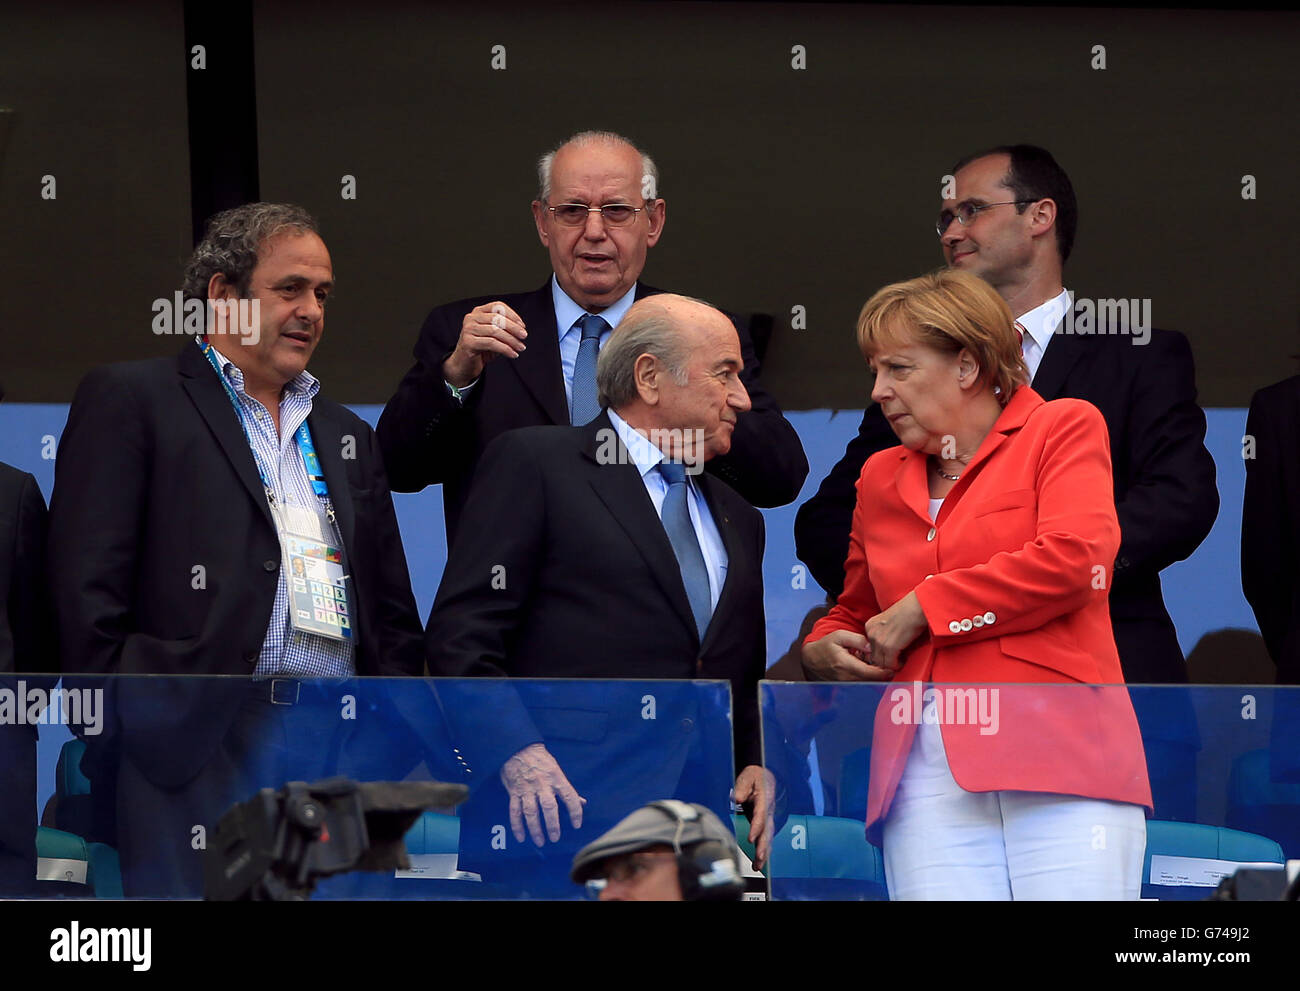 Le président de l'UEFA Michel Platini (à gauche), le président de la FIFA, Sepp Blatter (à gauche) et la chancelière allemande Angela Merkel (à droite) sont présents Banque D'Images